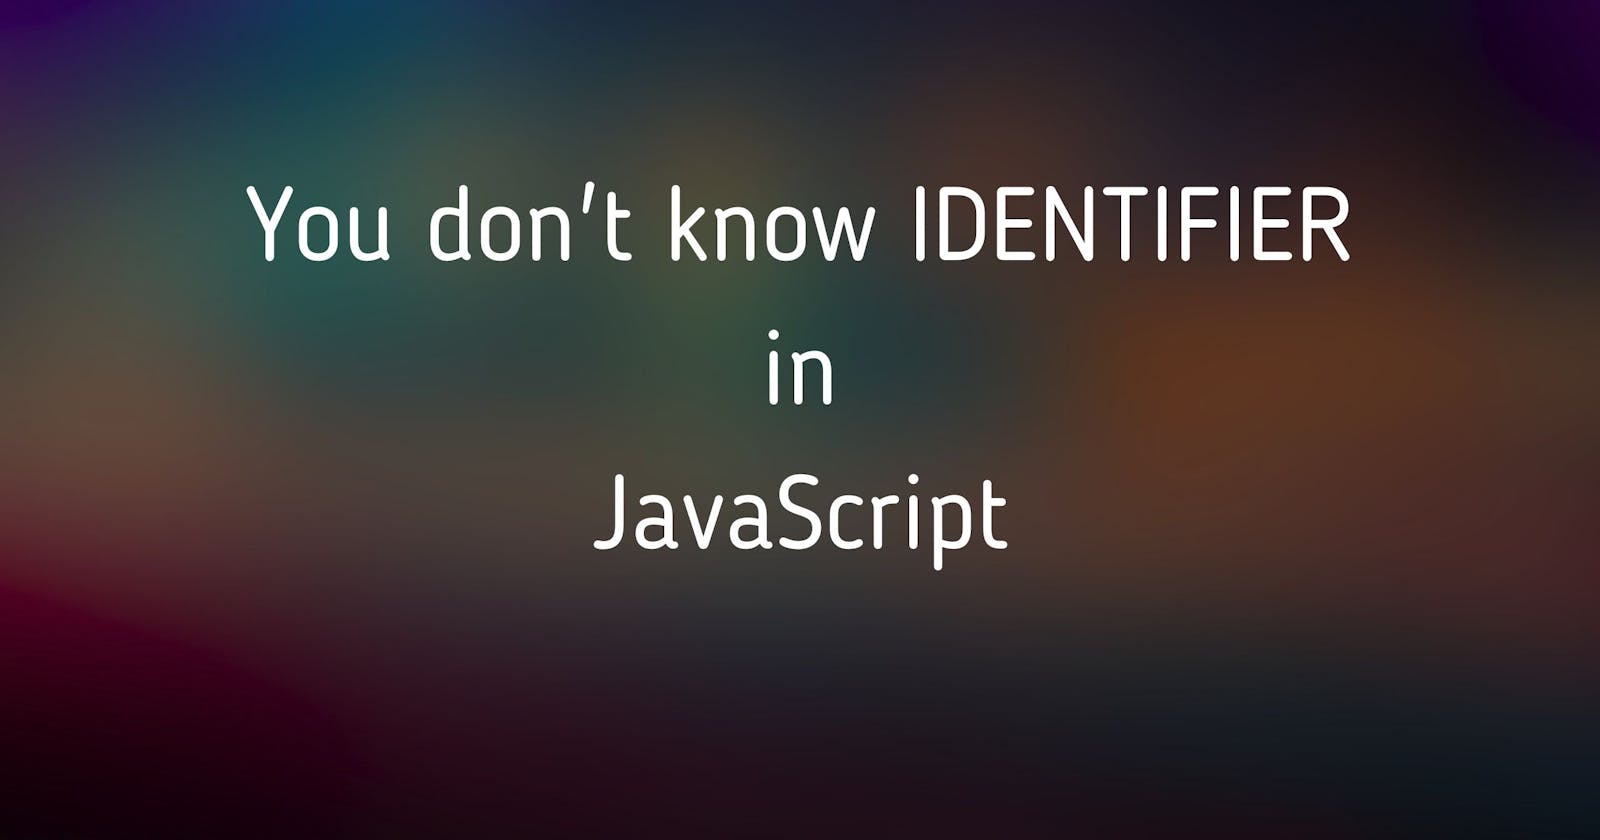 Identifier In Javascript